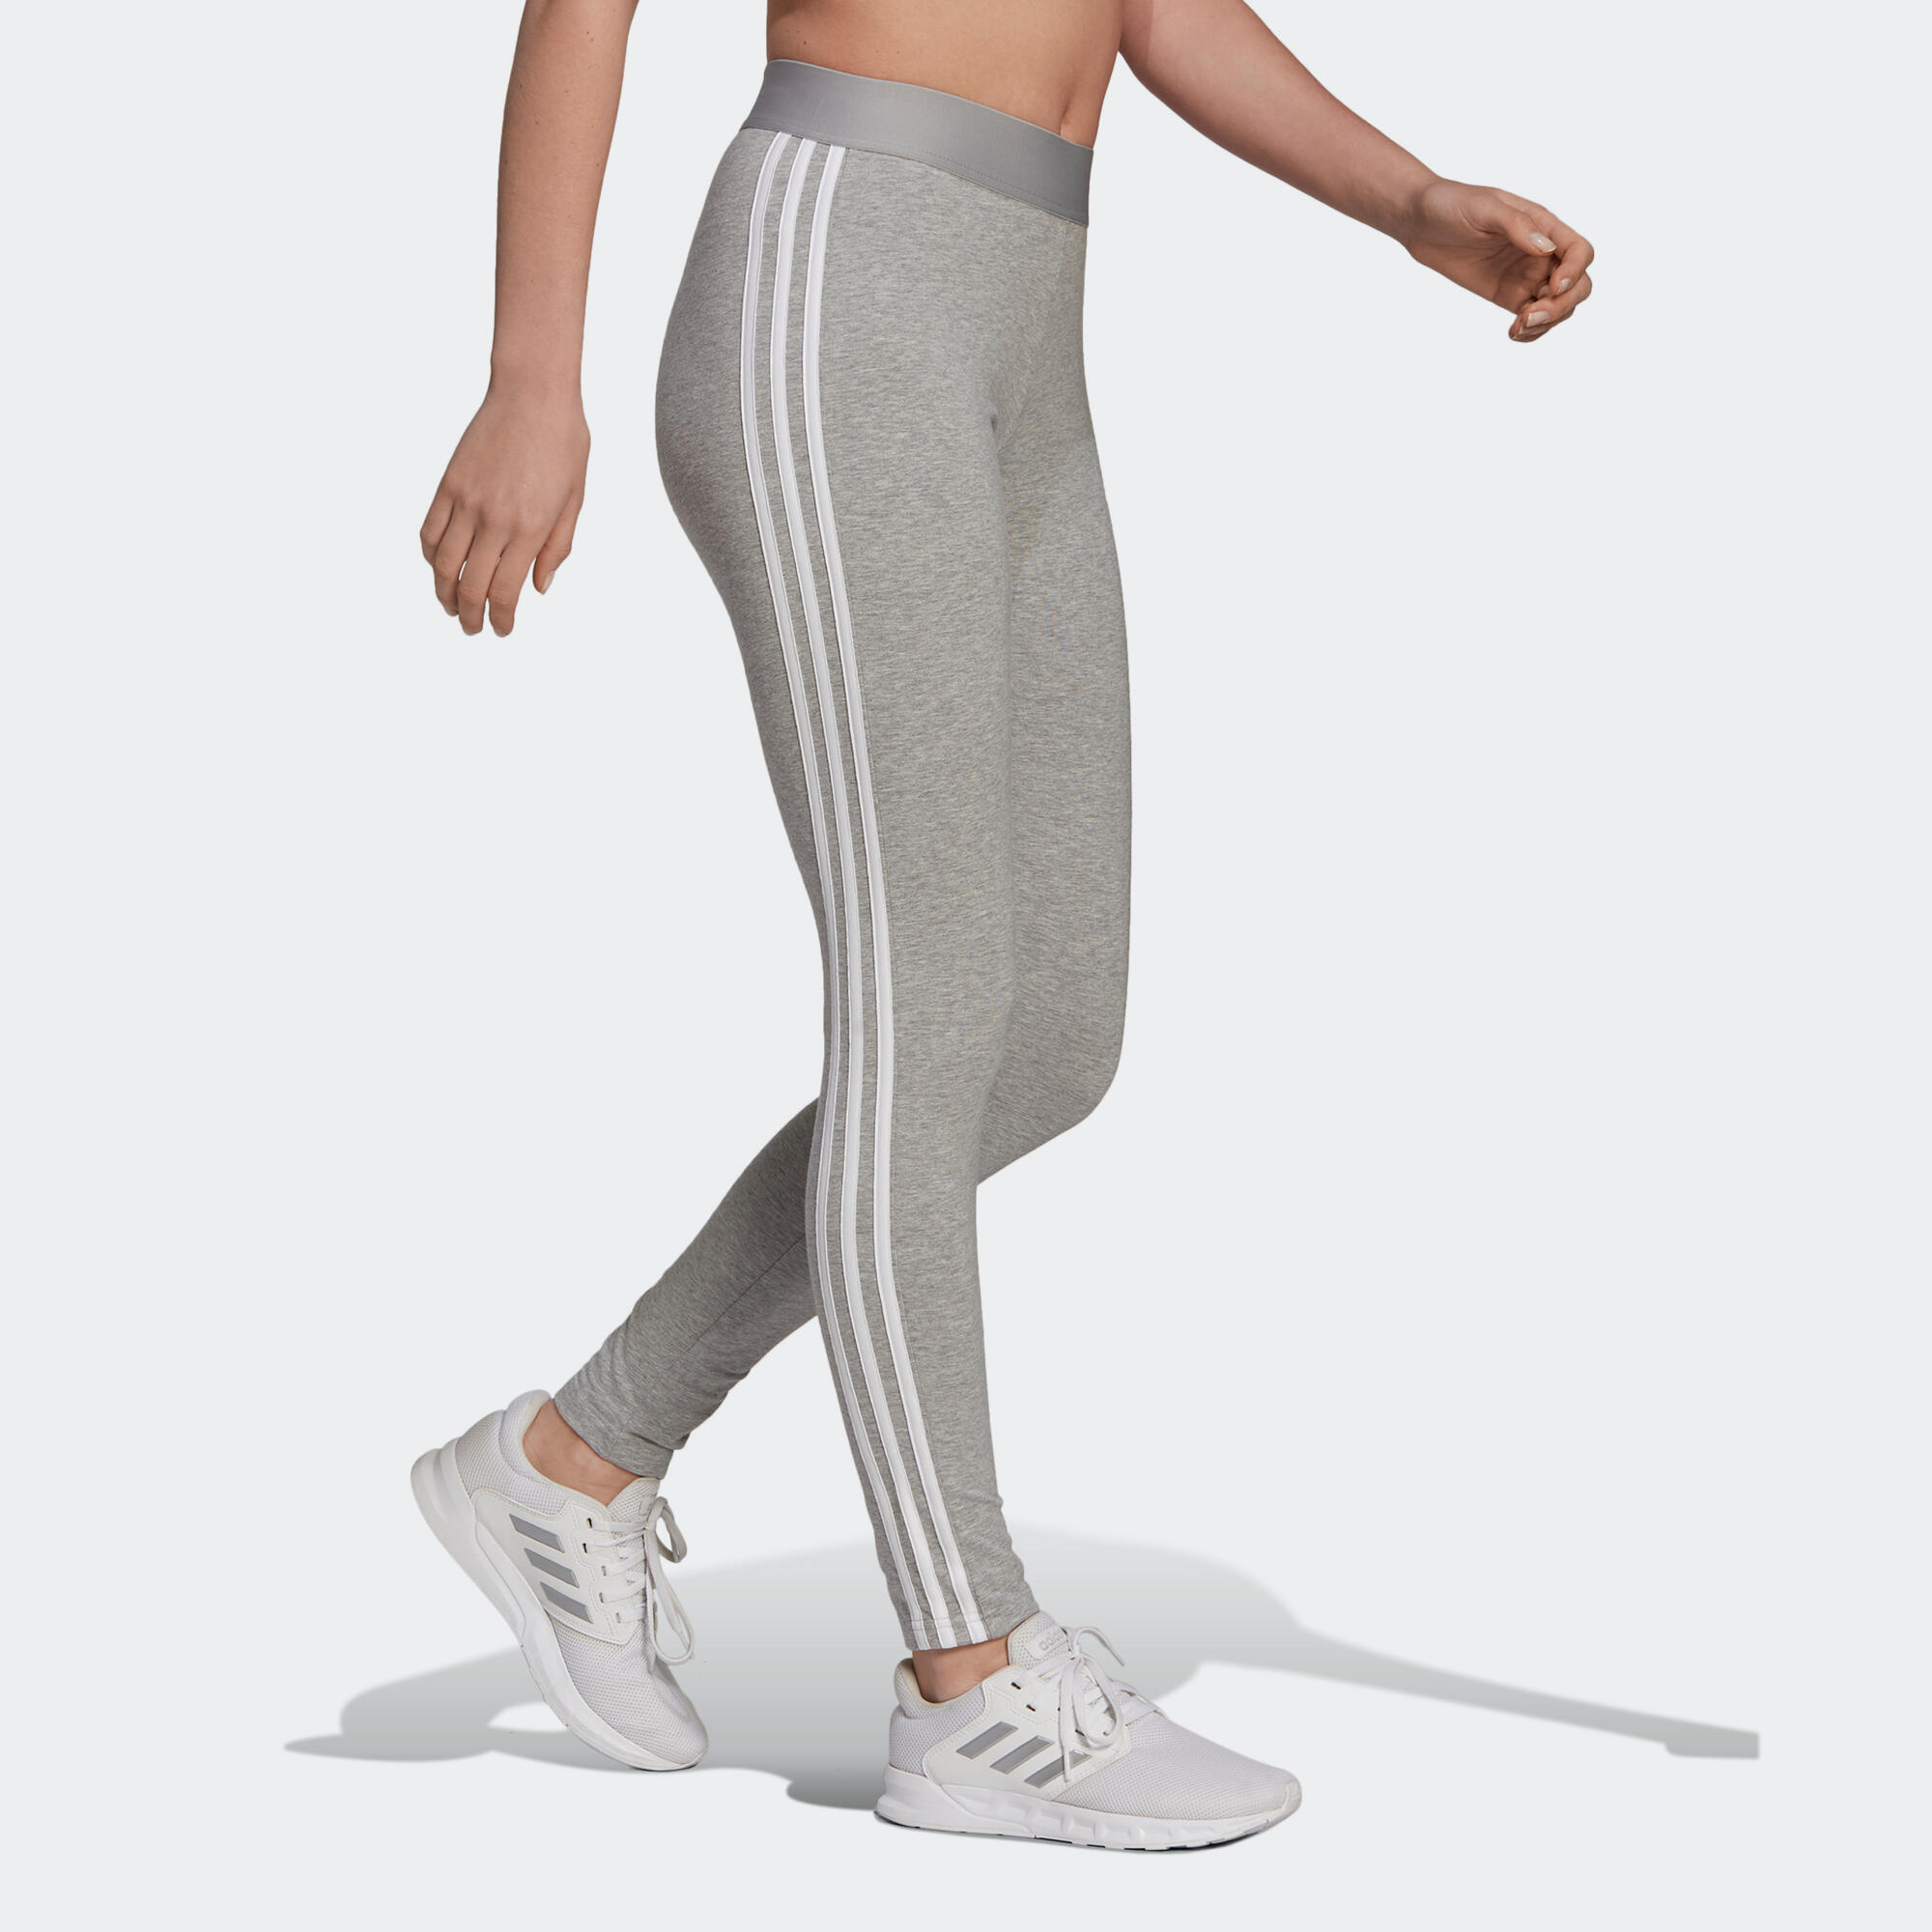 ADIDAS 3-Stripes Fitness Leggings - Mottled Light Grey